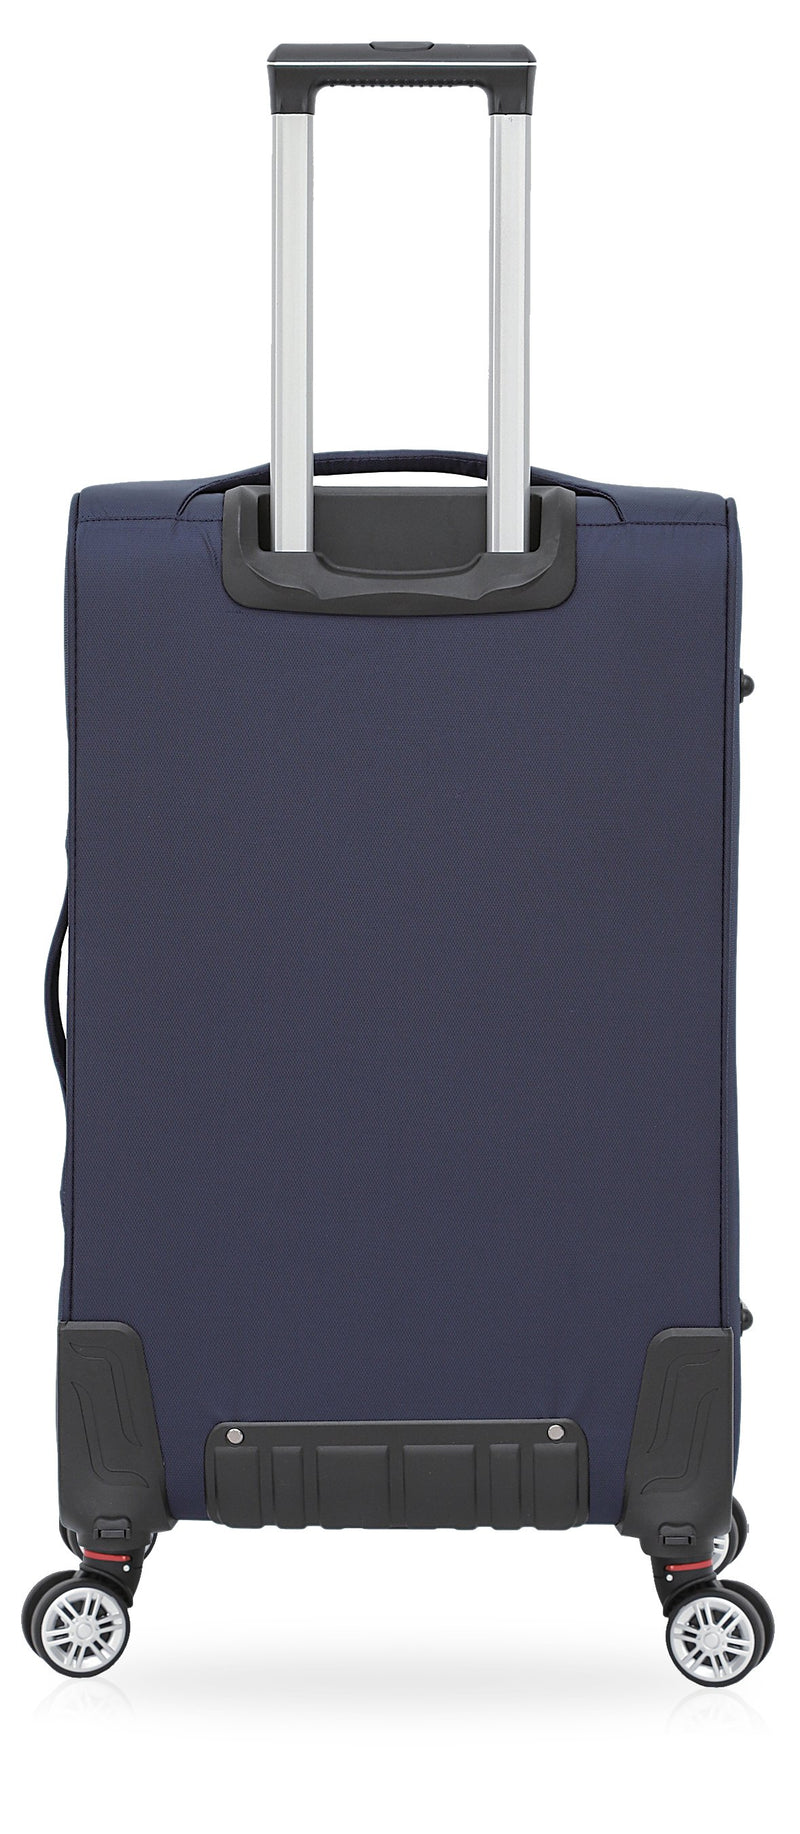 TOSCANO Ricerca 3-pc (18", 23", 29") Expandable Suitcase Luggage Set